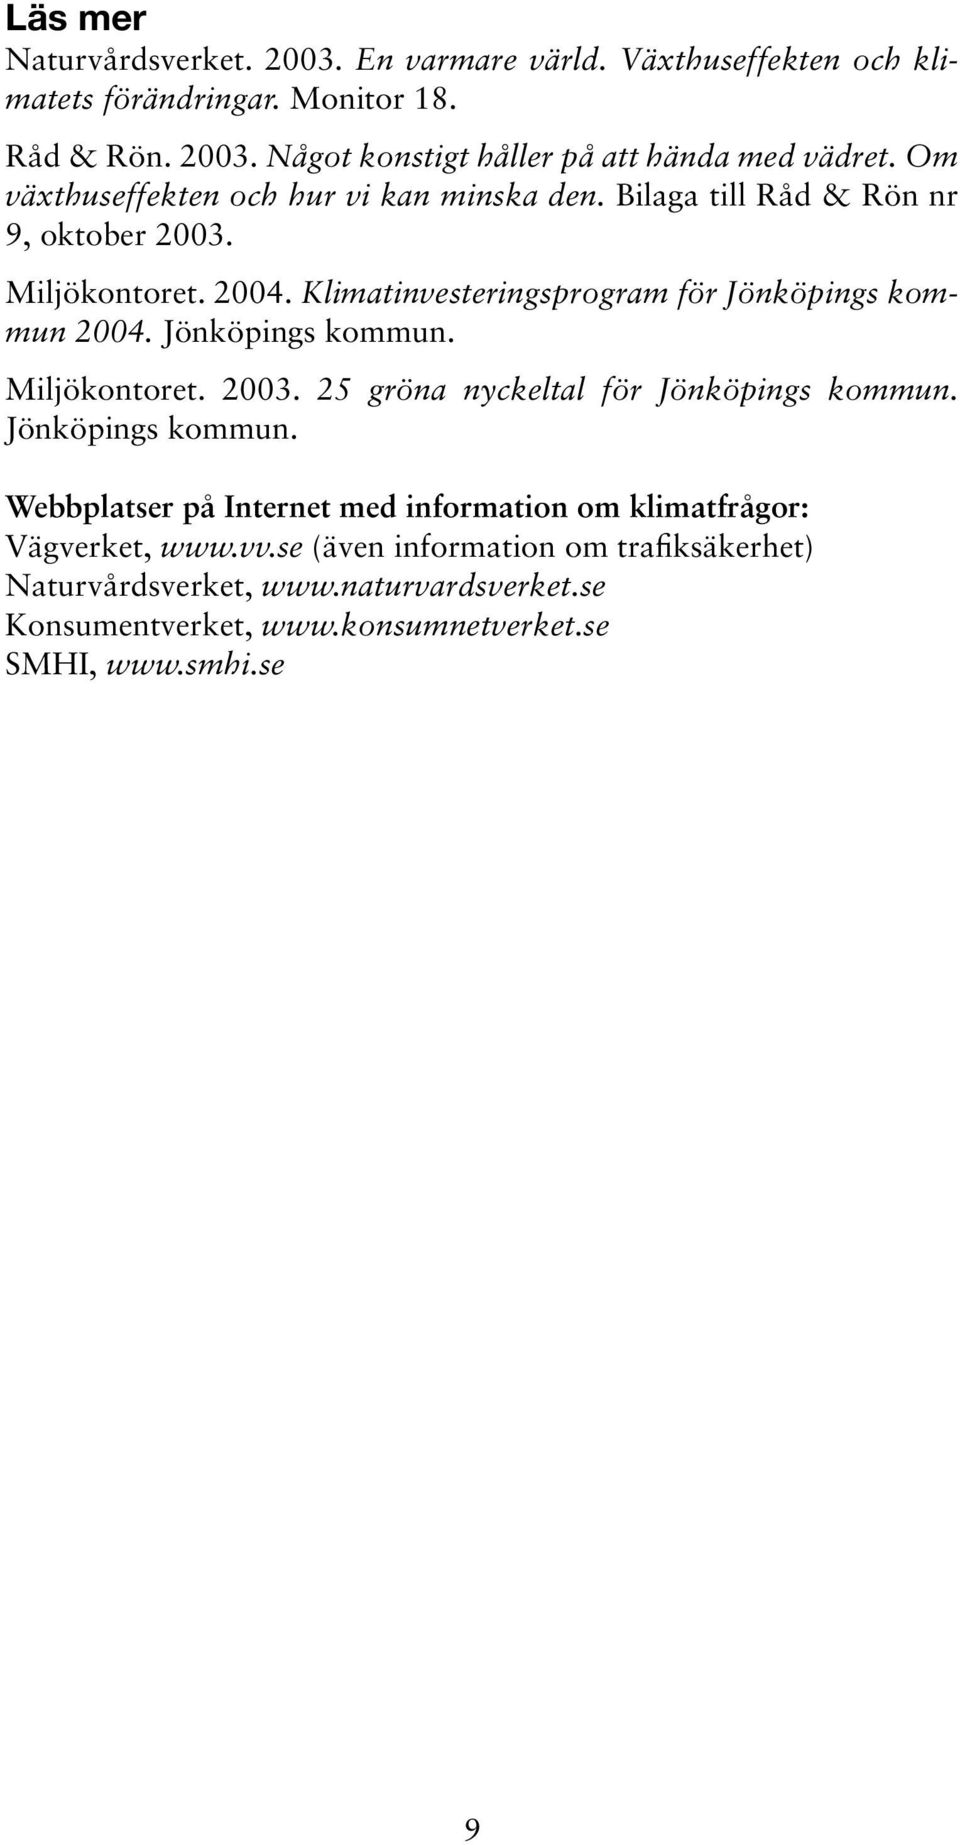 Jönköpings kommun. Miljökontoret. 2003. 25 gröna nyckeltal för Jönköpings kommun. Jönköpings kommun. Webbplatser på Internet med information om klimatfrågor: Vägverket, www.